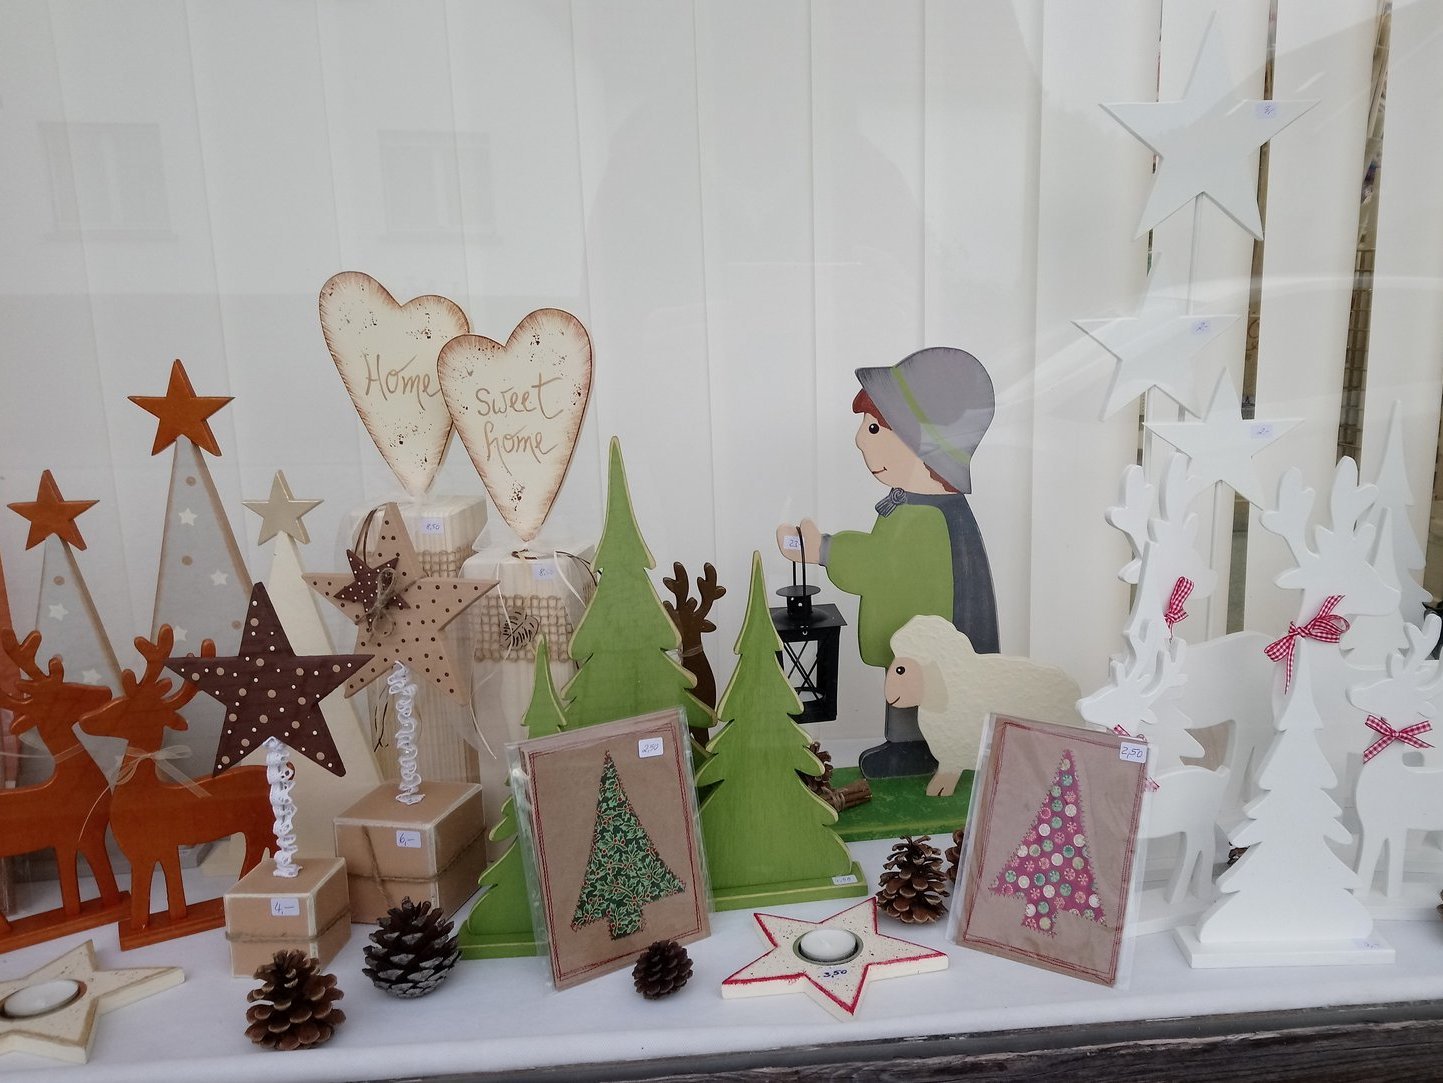 Verkaufsstand für selbstgemachte Weihnachtskunst - Elche, Hirten, Sterne Weihnachtsbäume - alles aus Holz und schön bemalt